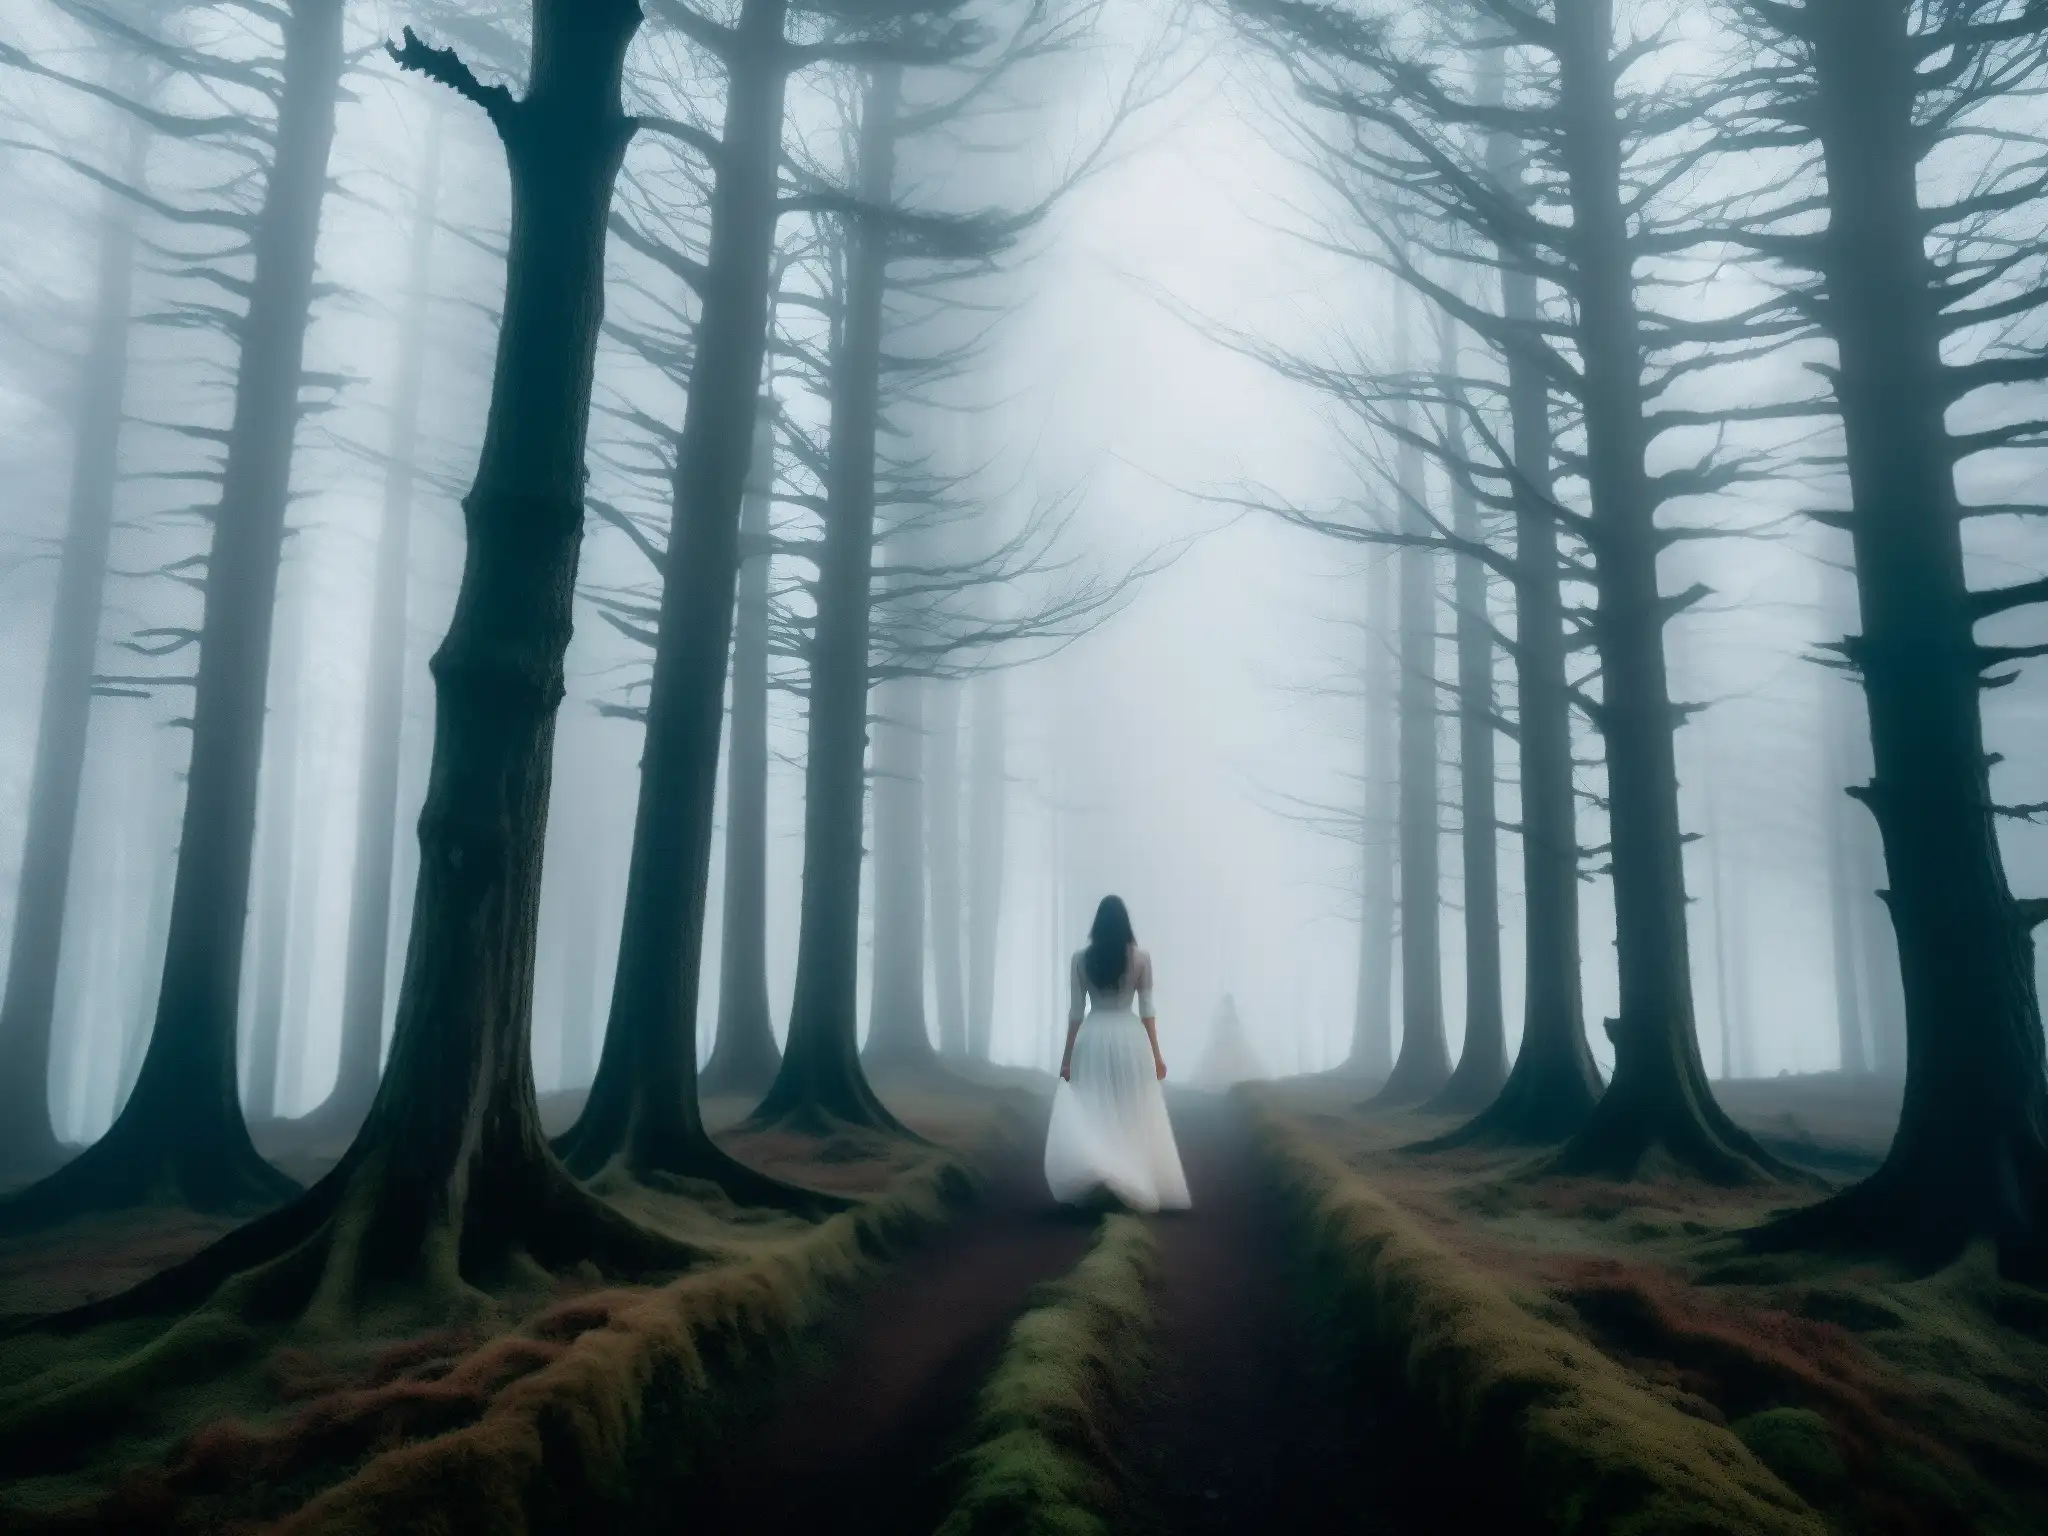 En el bosque neblinoso al anochecer, una figura en vestido blanco se oculta entre árboles retorcidos